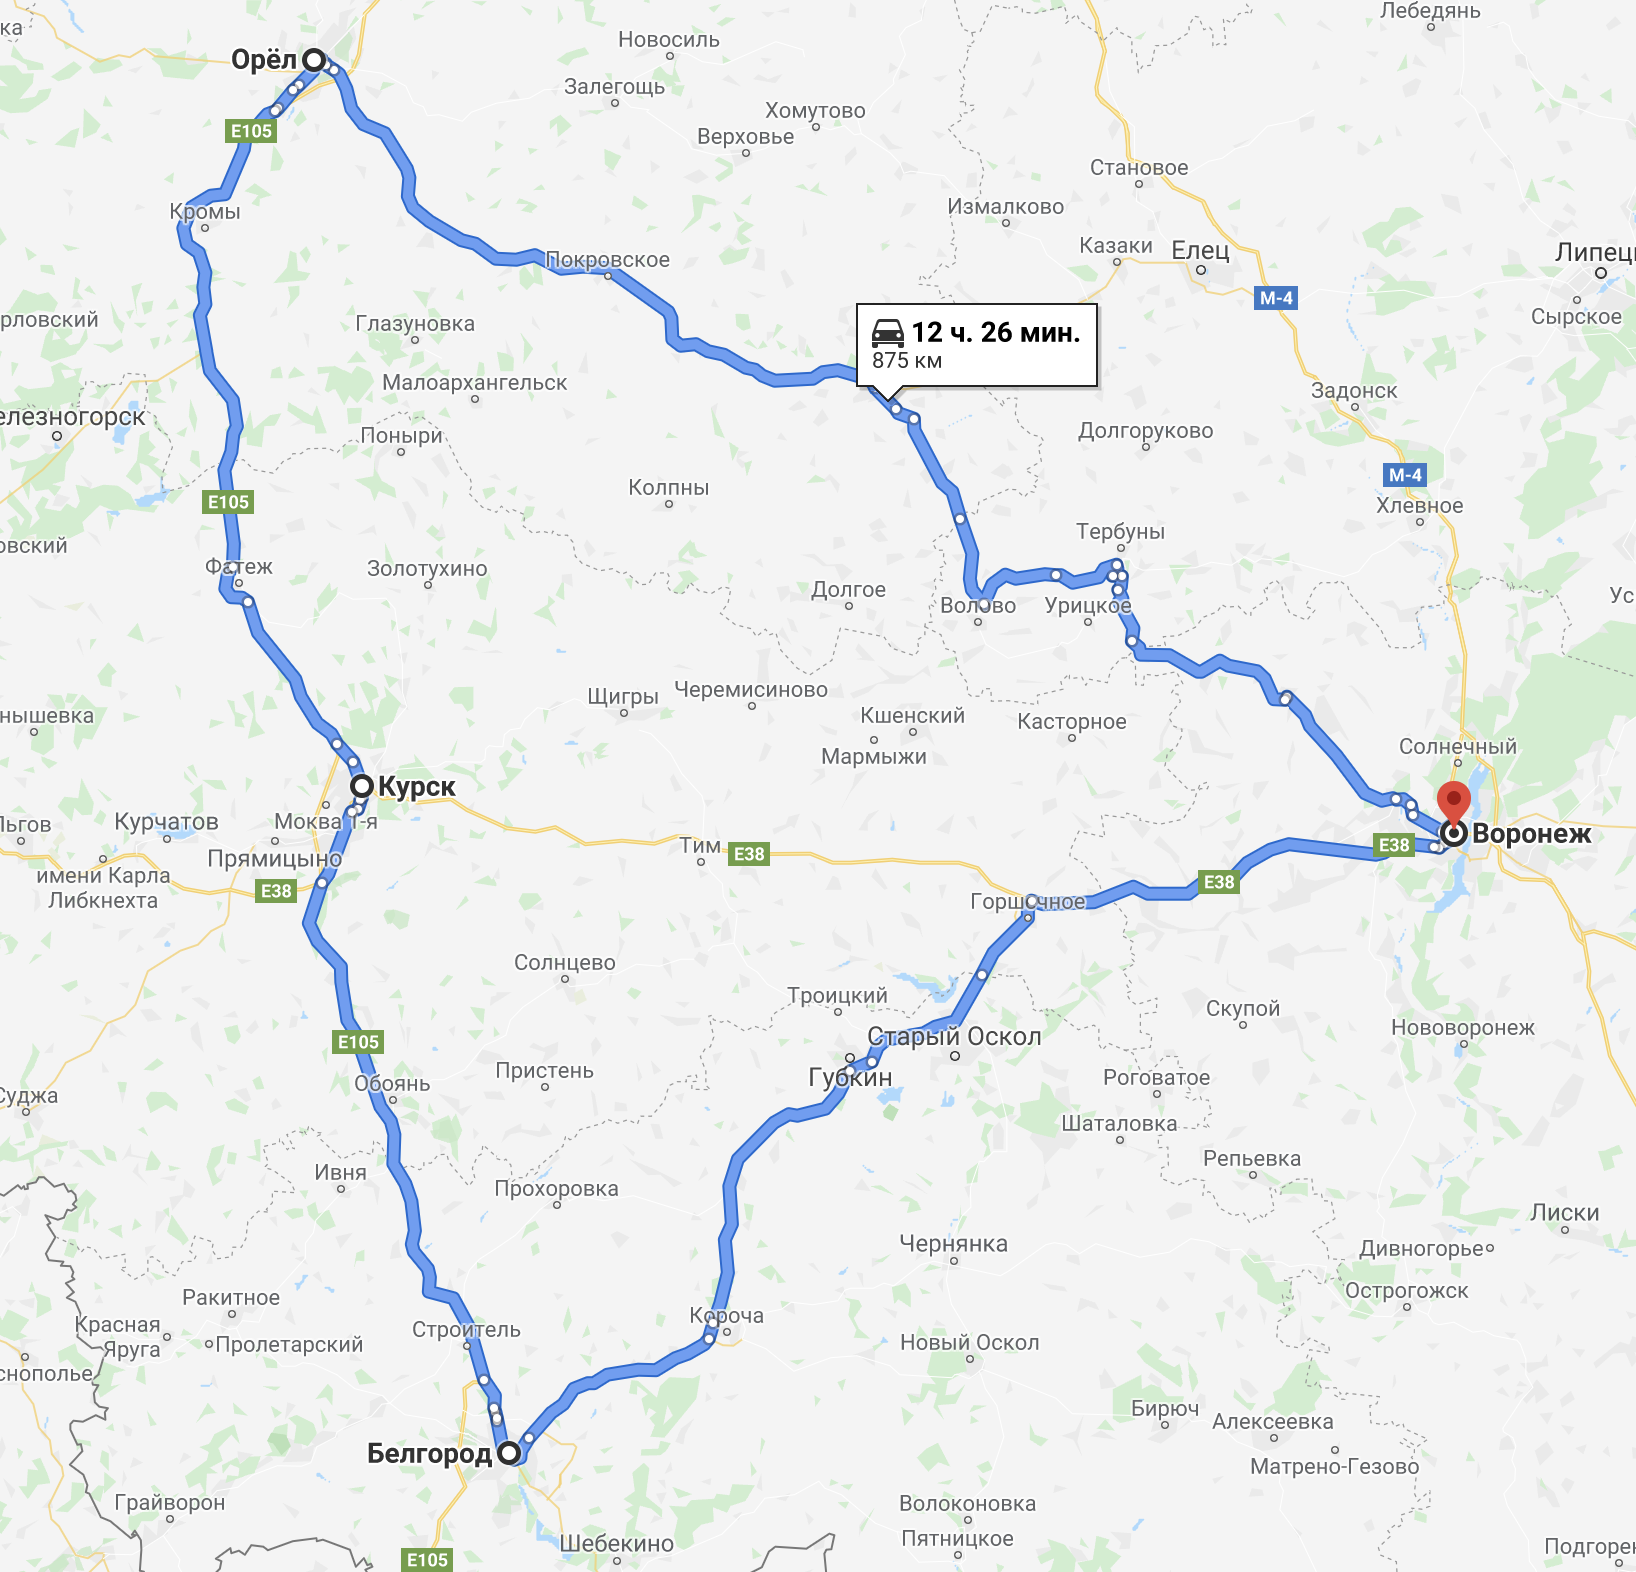 Круговой маршрут: из Воронежа выехали, сделали круг по трем городам и вернулись. Пробег всего 875 км